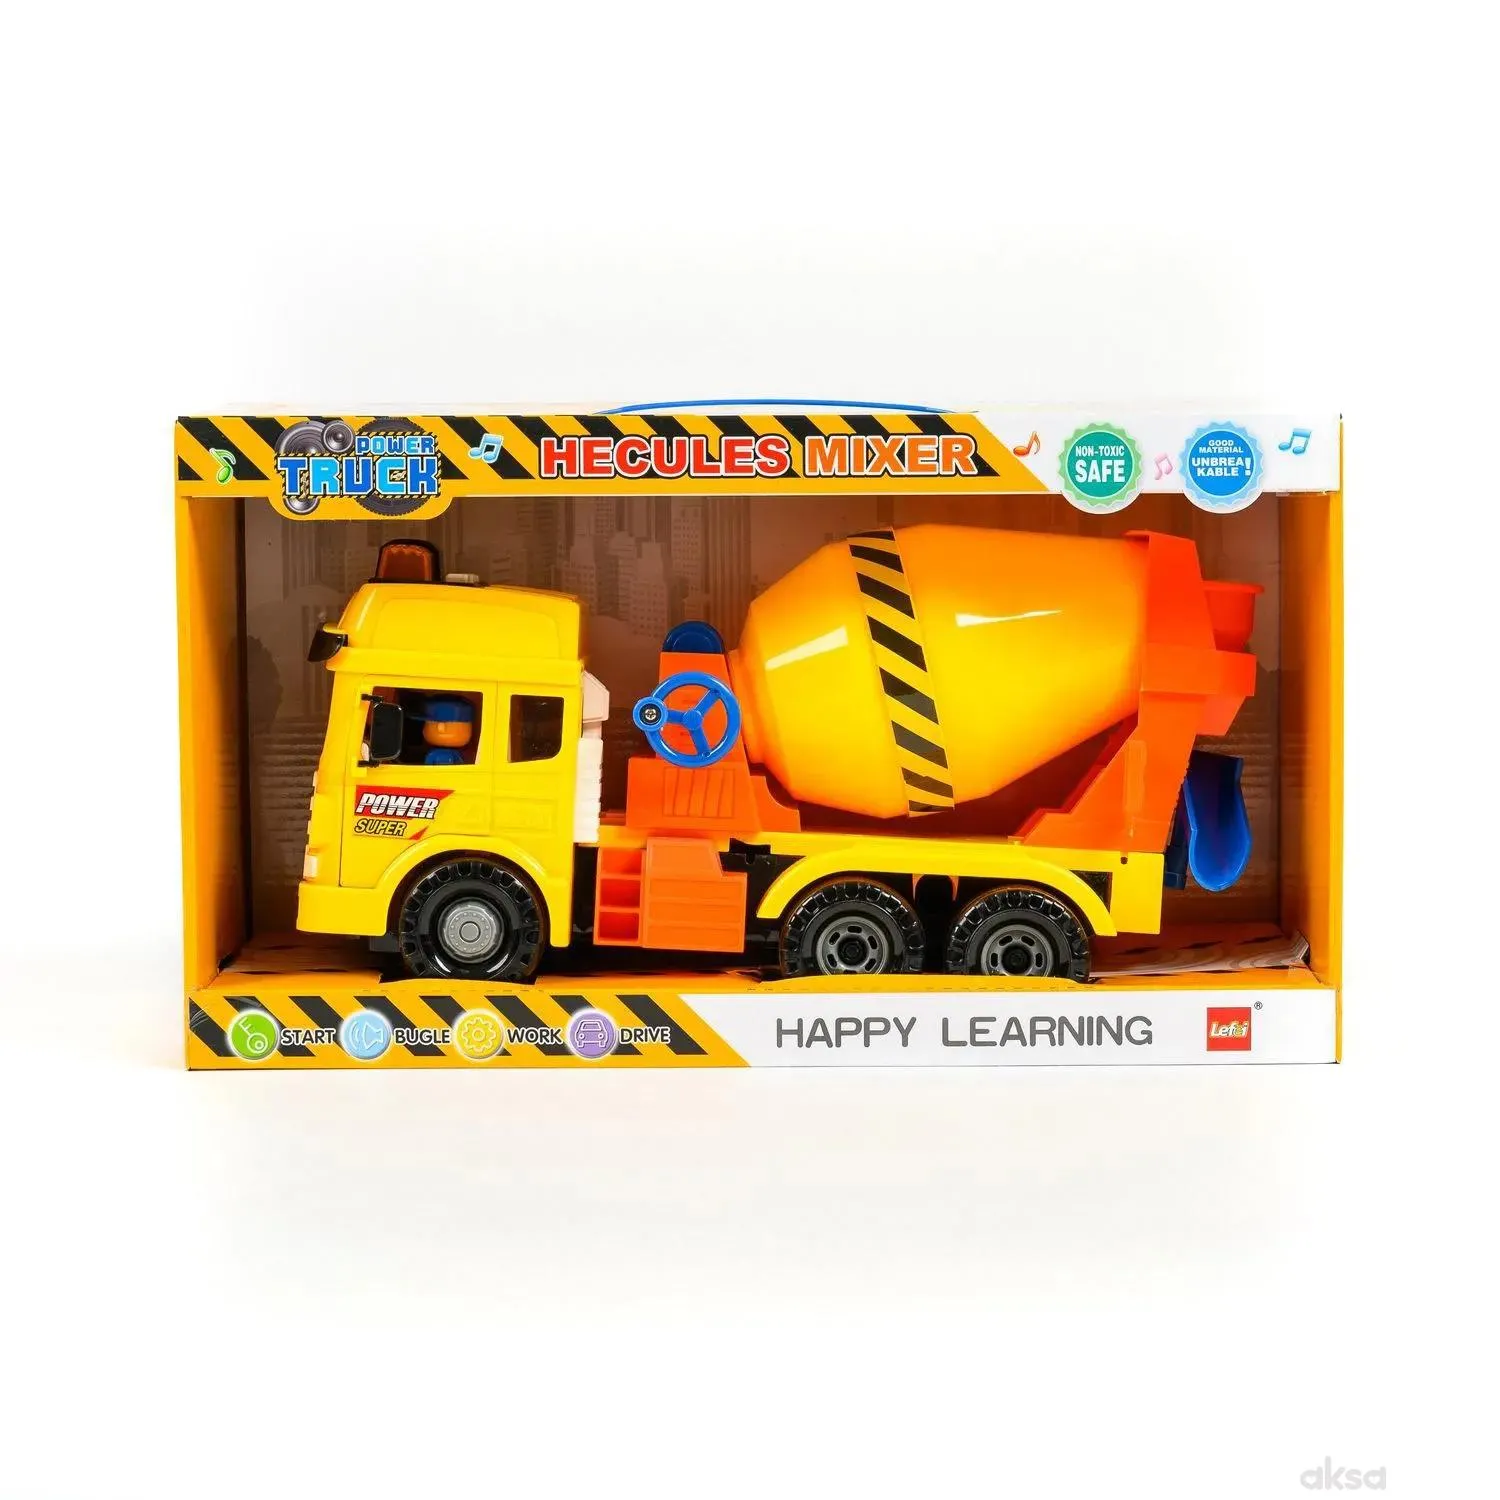 HK mini igračka, frikcioni kamion mješalica, veći 